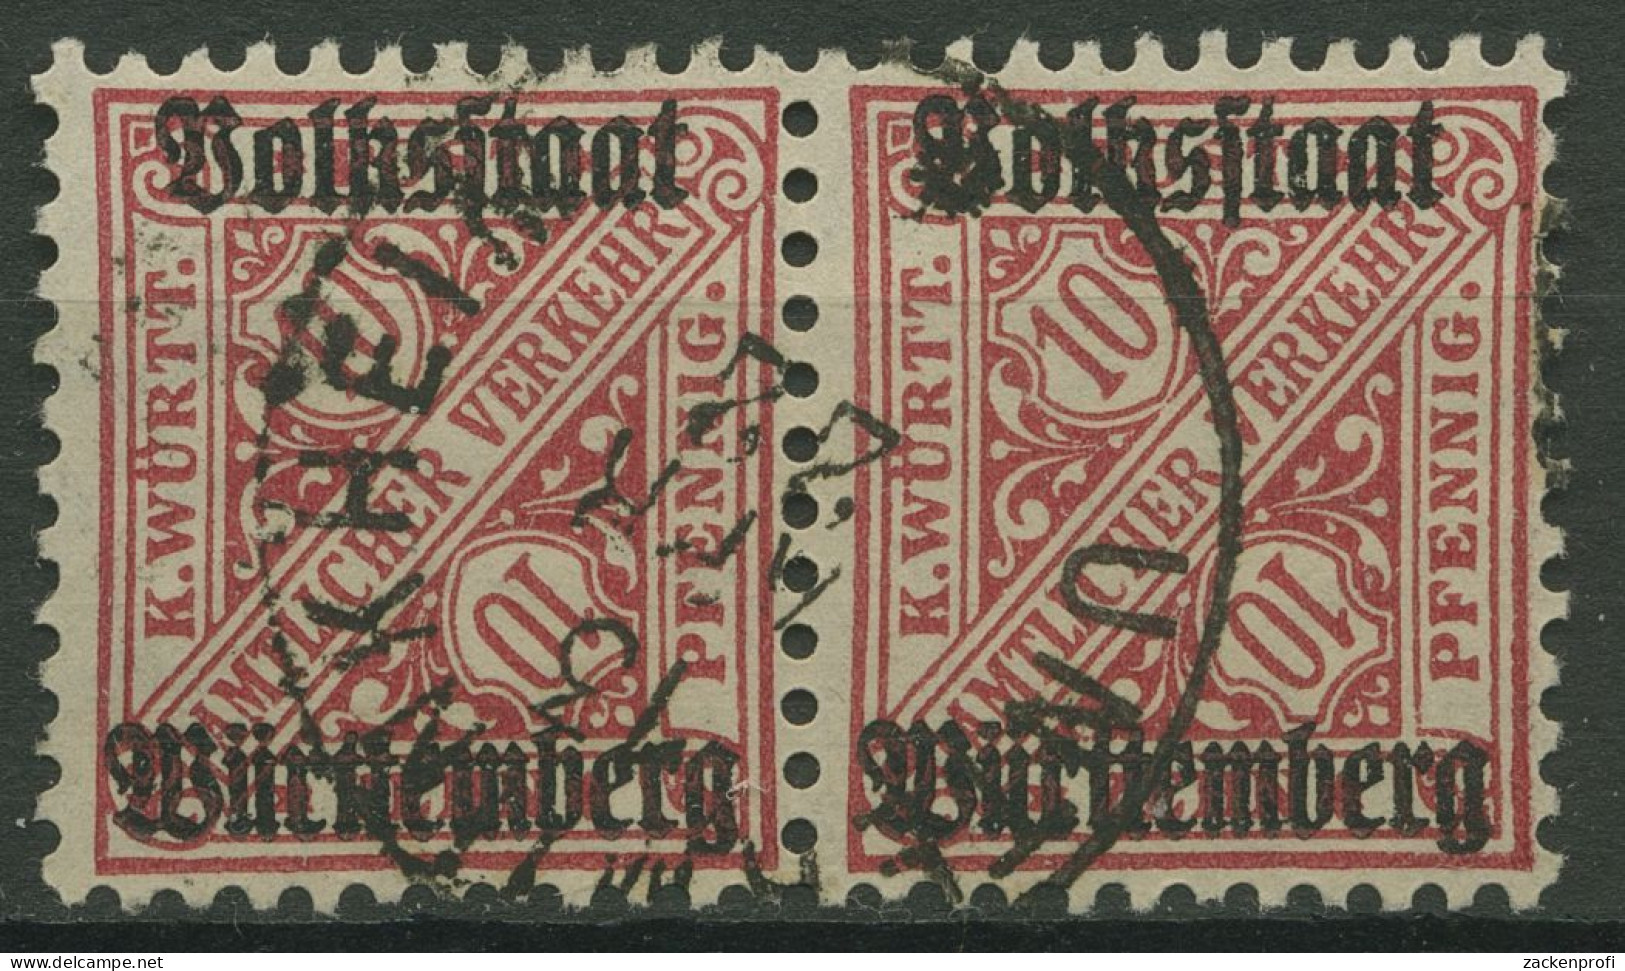 Württemberg Dienstmarken 1919 Mit Aufdruck 262 Waagerechtes Paar Gestempelt - Used